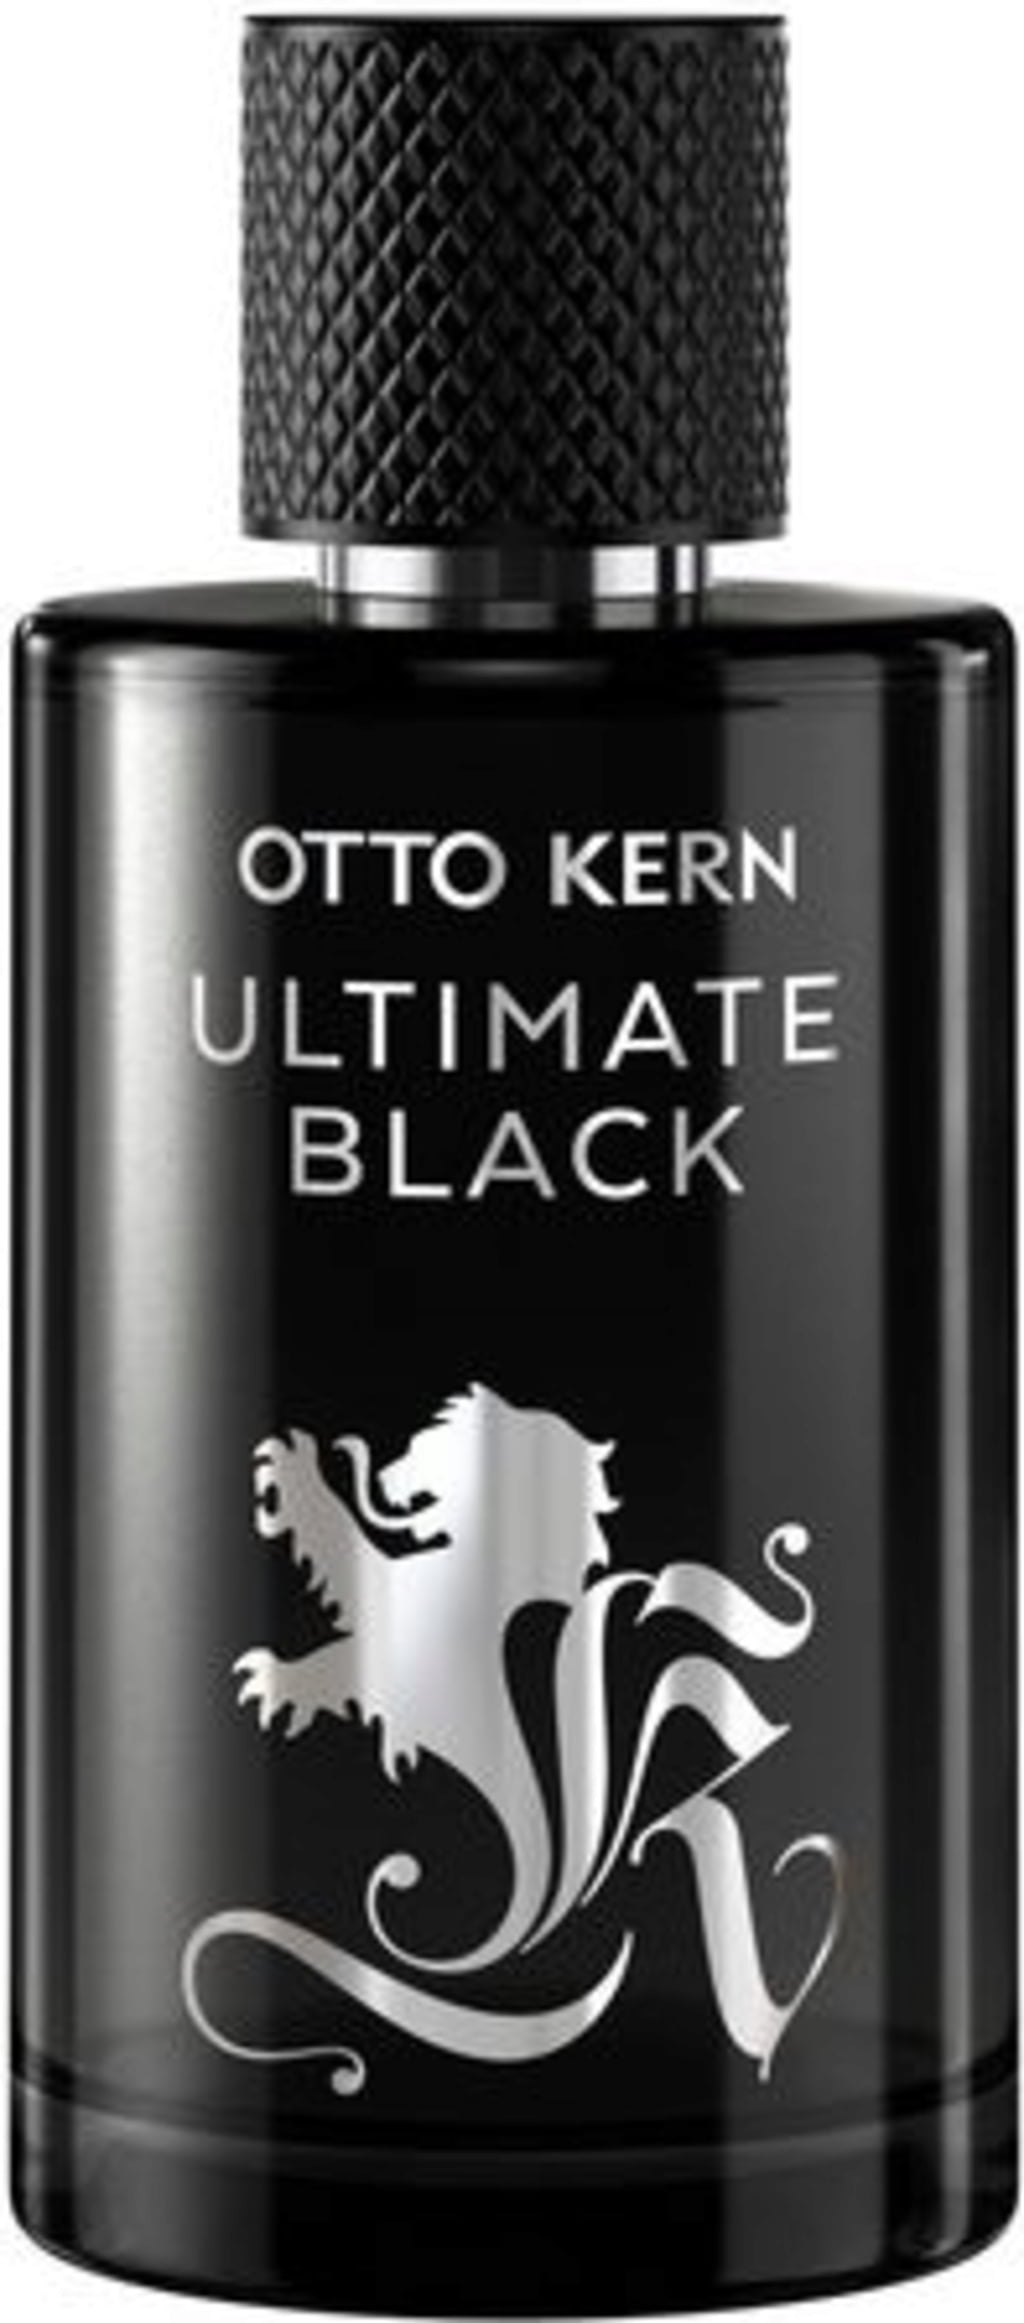 Otto Kern ULTIMATE BLACK Eau de Toilette, 50 ml - oh feliz International  Online Shop